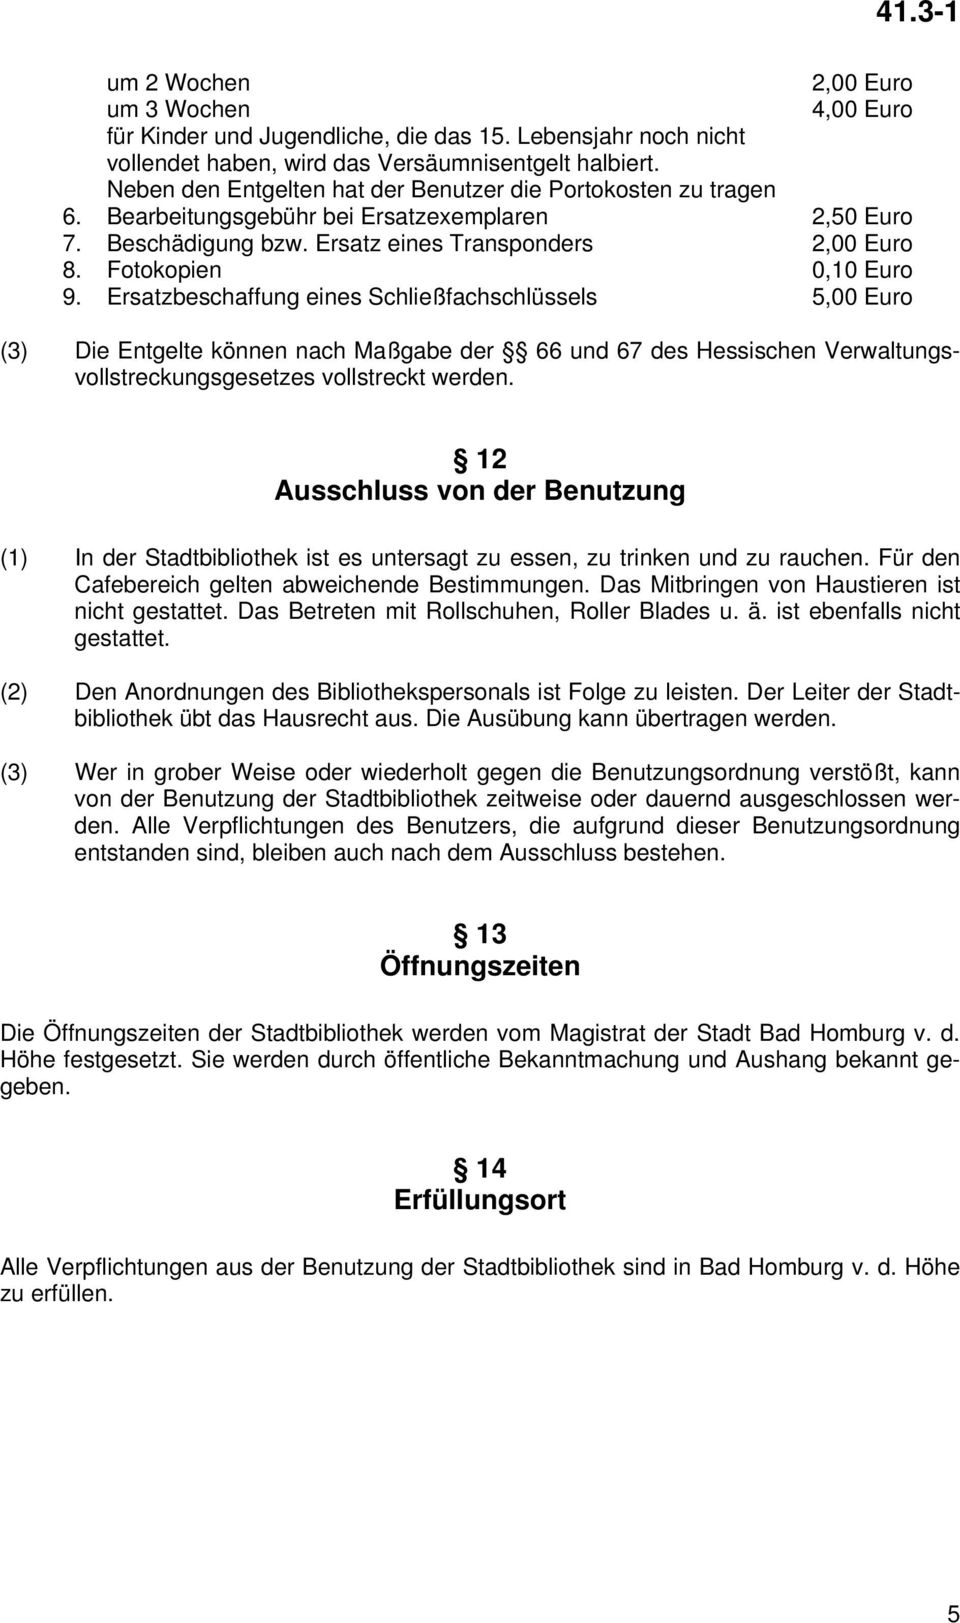 Fotokopien 0,10 Euro 9. Ersatzbeschaffung eines Schließfachschlüssels 5,00 Euro (3) Die Entgelte können nach Maßgabe der 66 und 67 des Hessischen Verwaltungsvollstreckungsgesetzes vollstreckt werden.